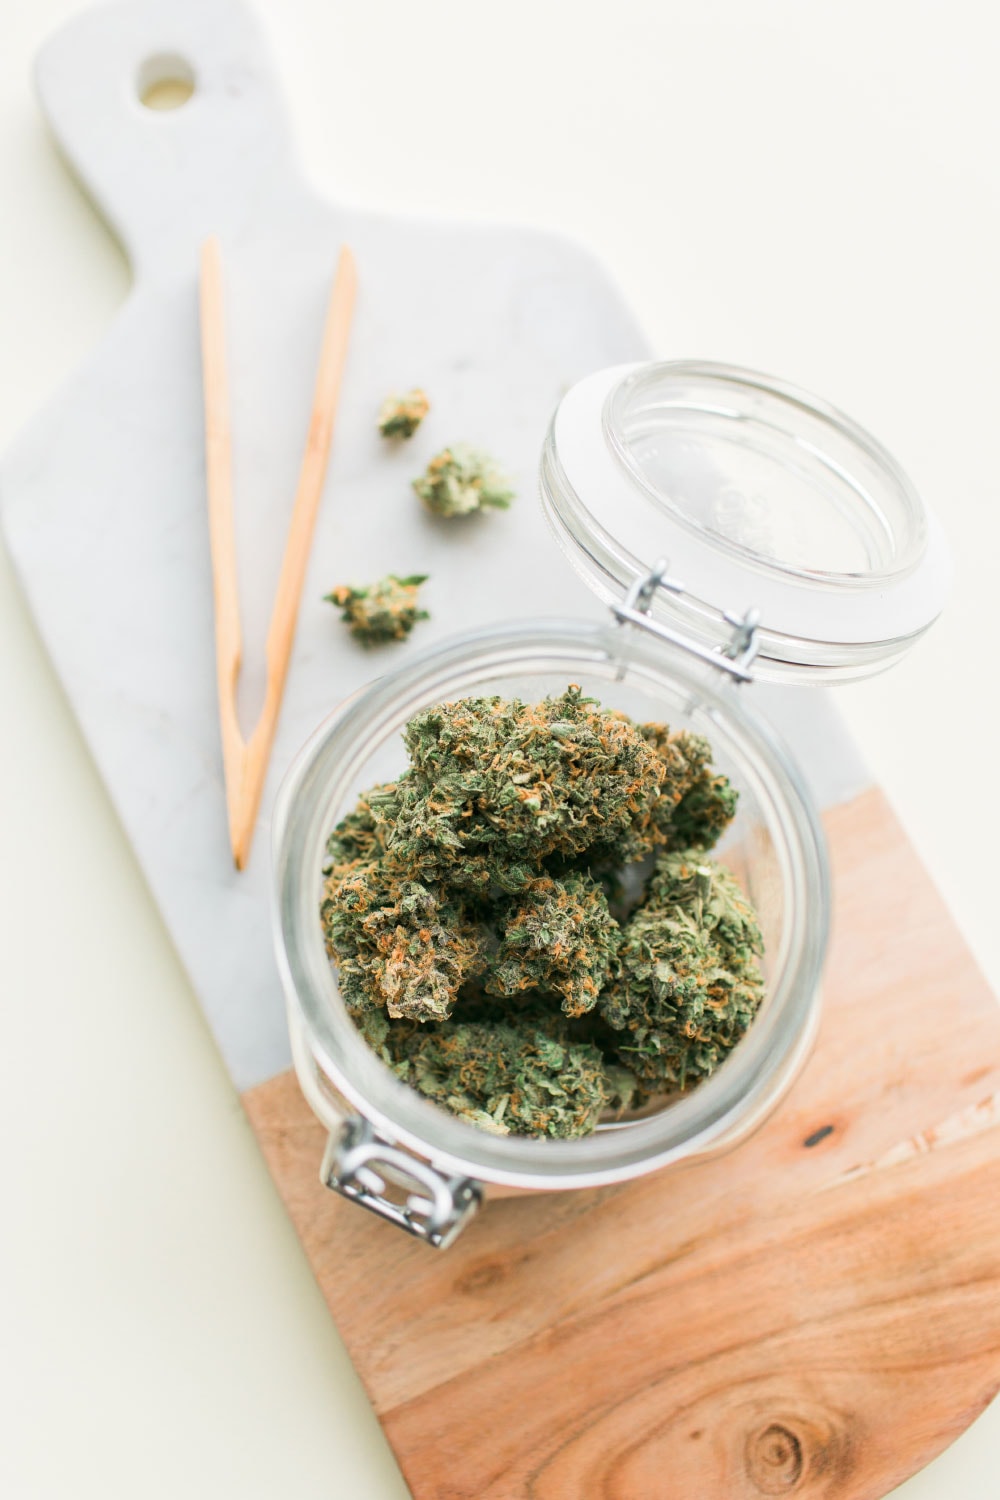 Jar Of Marijuana And Tongs On Cutting Board